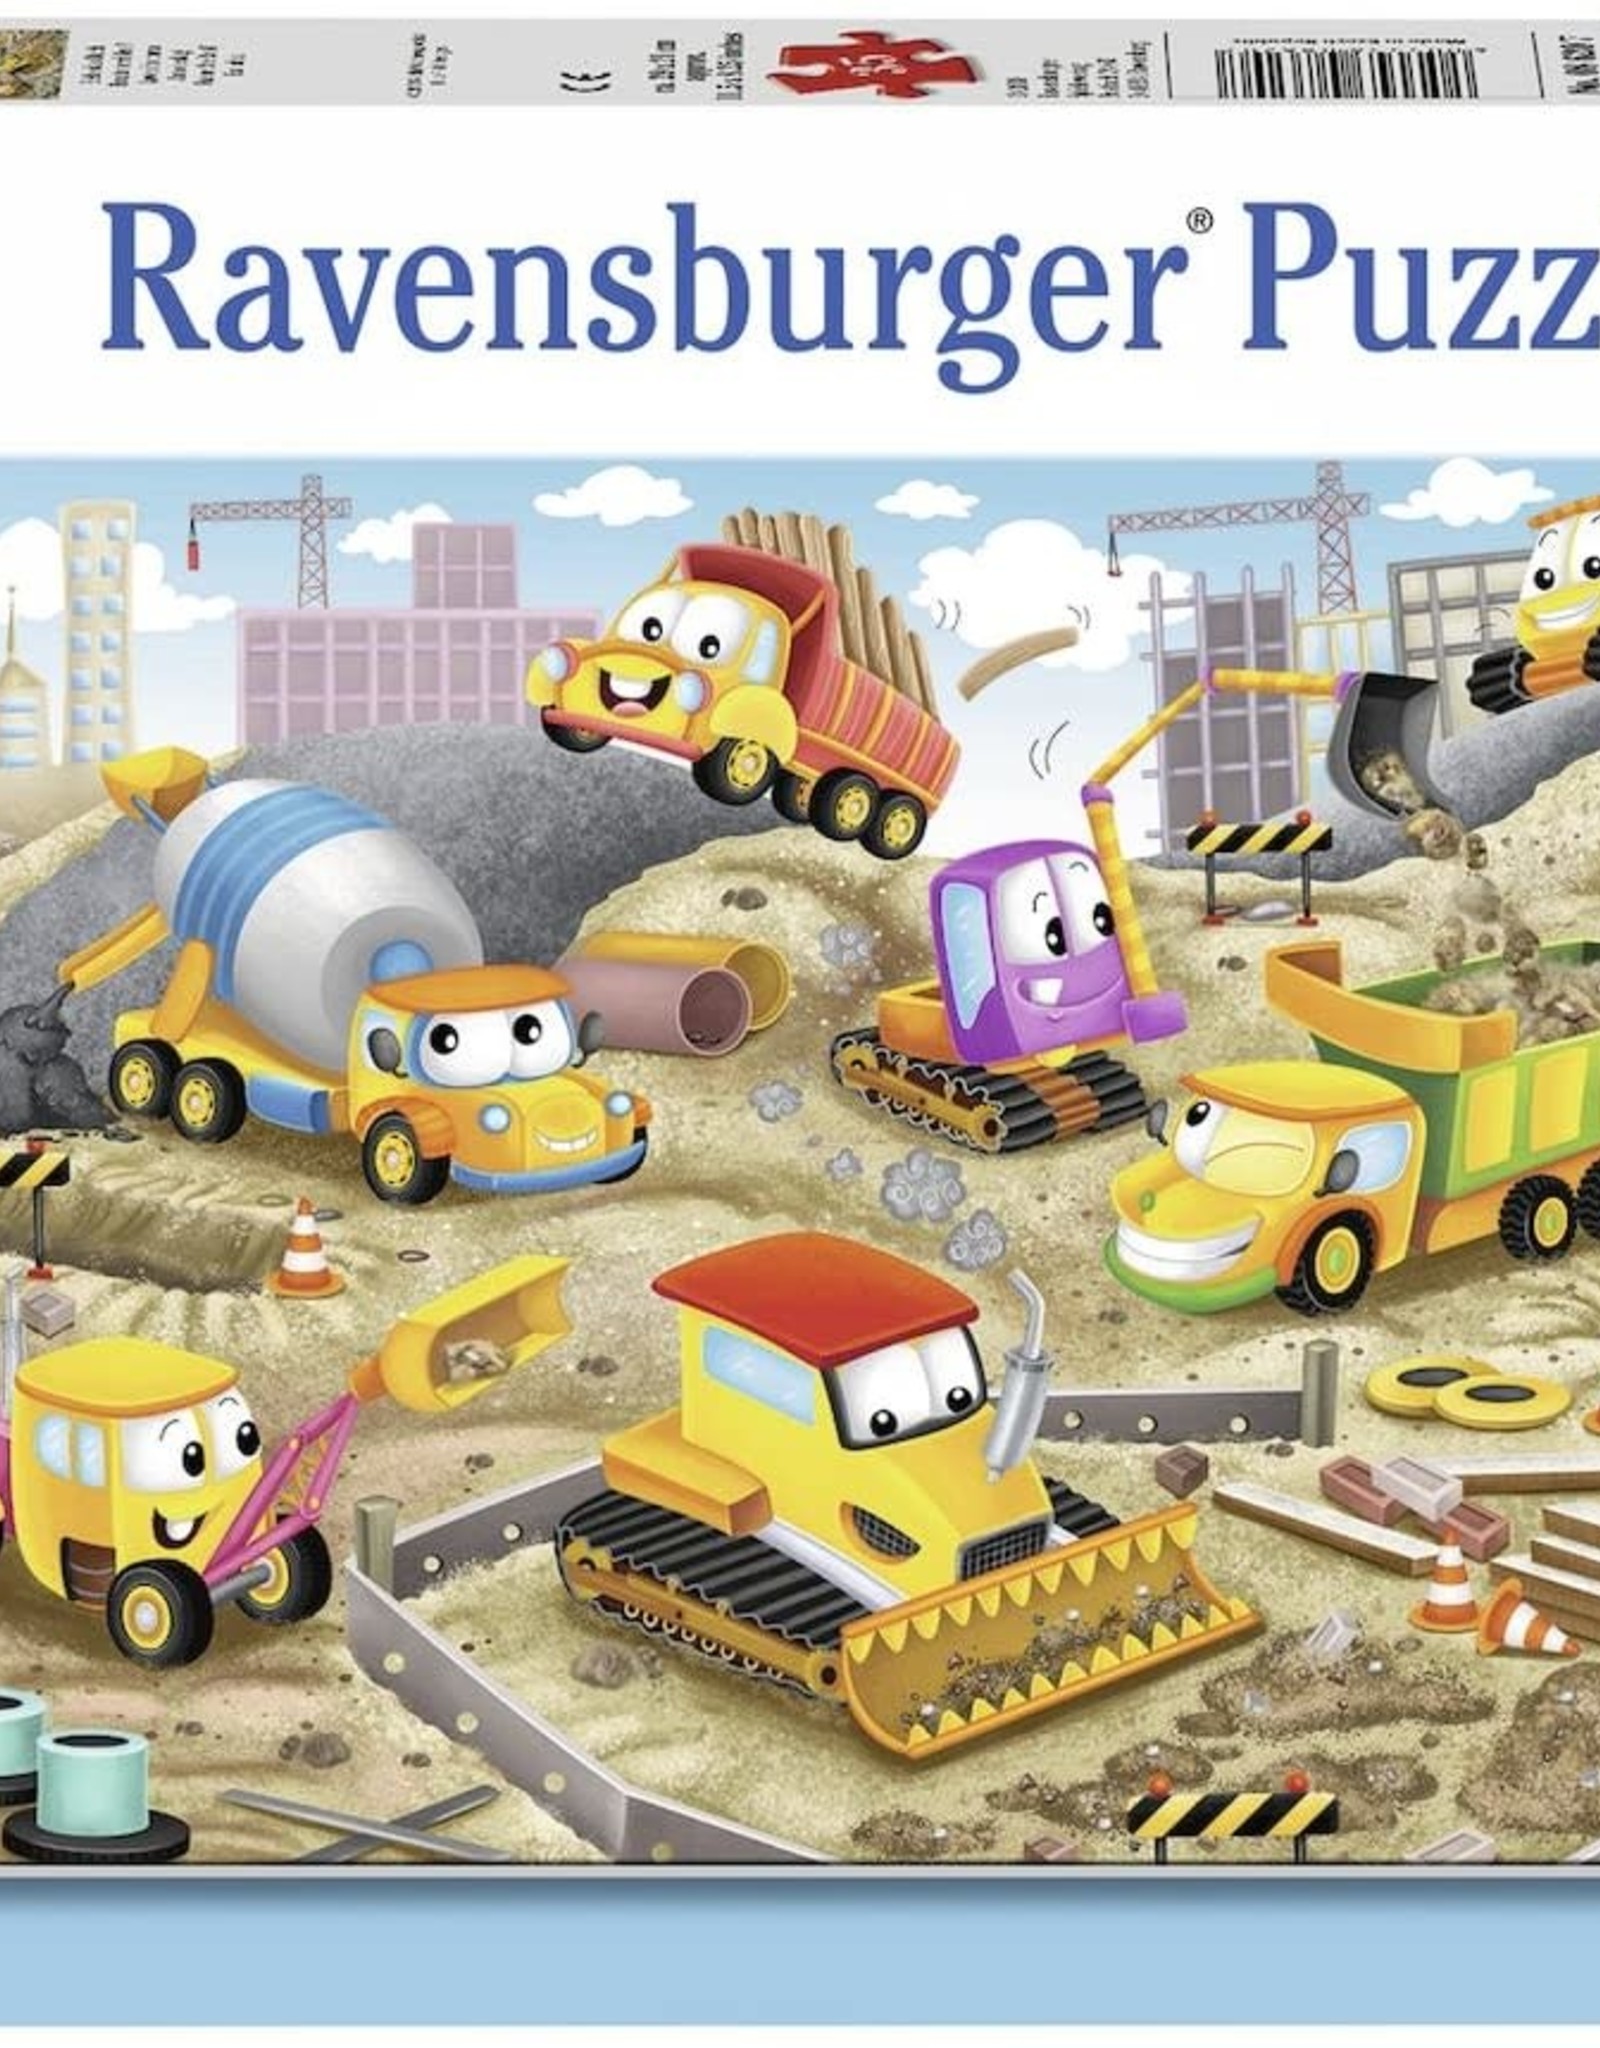 Ravensburger Raise the Roof! 35pc RAV08620